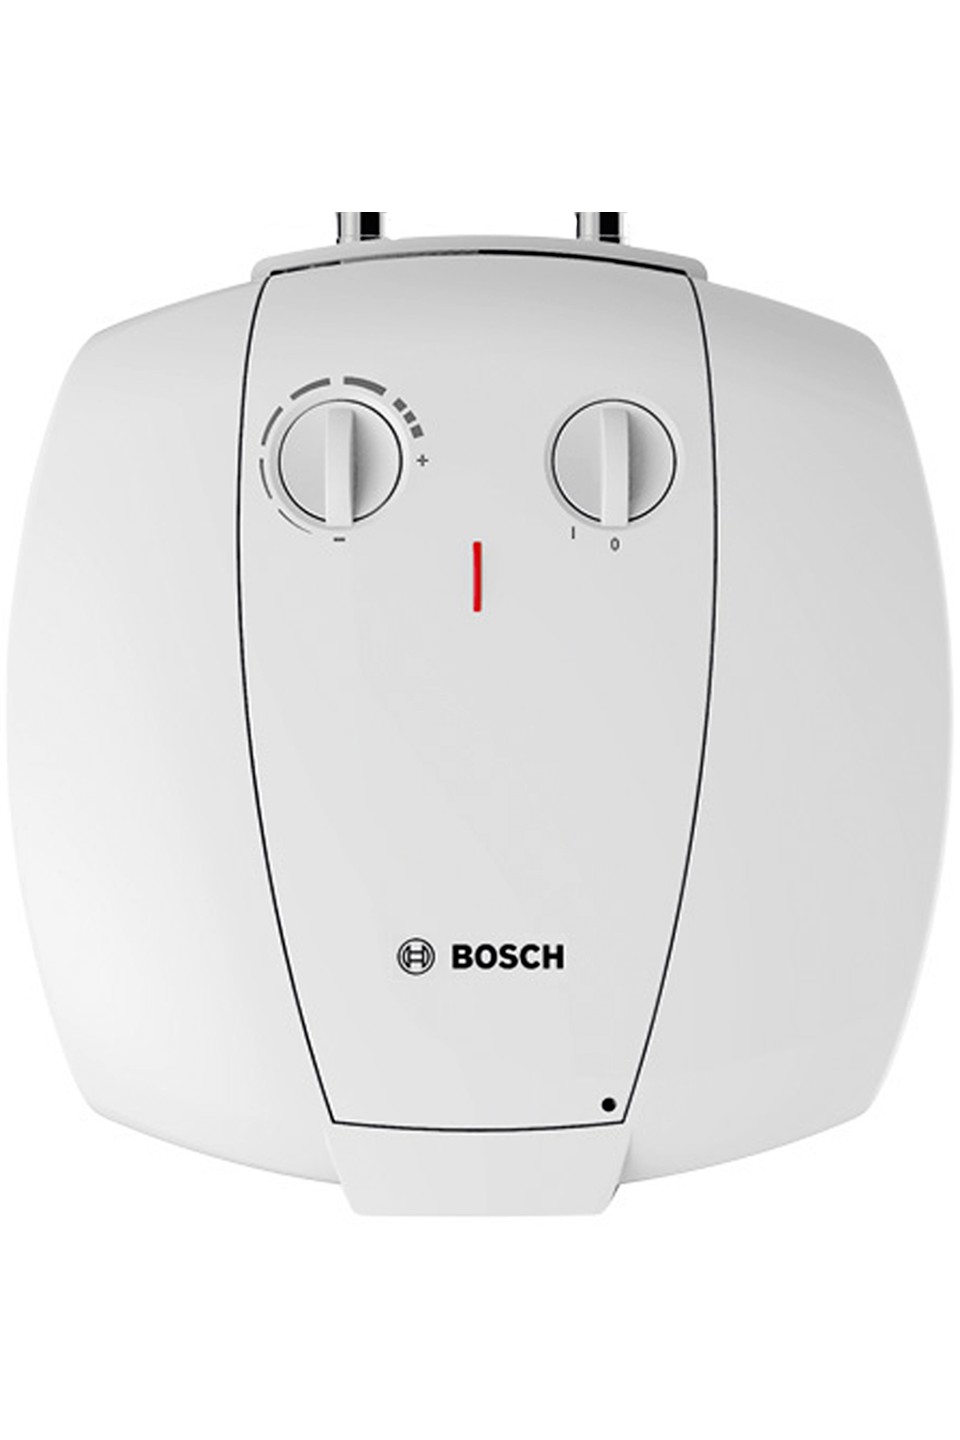 Цена бойлер bosch на 15 литров Bosch TR 2000 T 15 T (7736504744) в Киеве